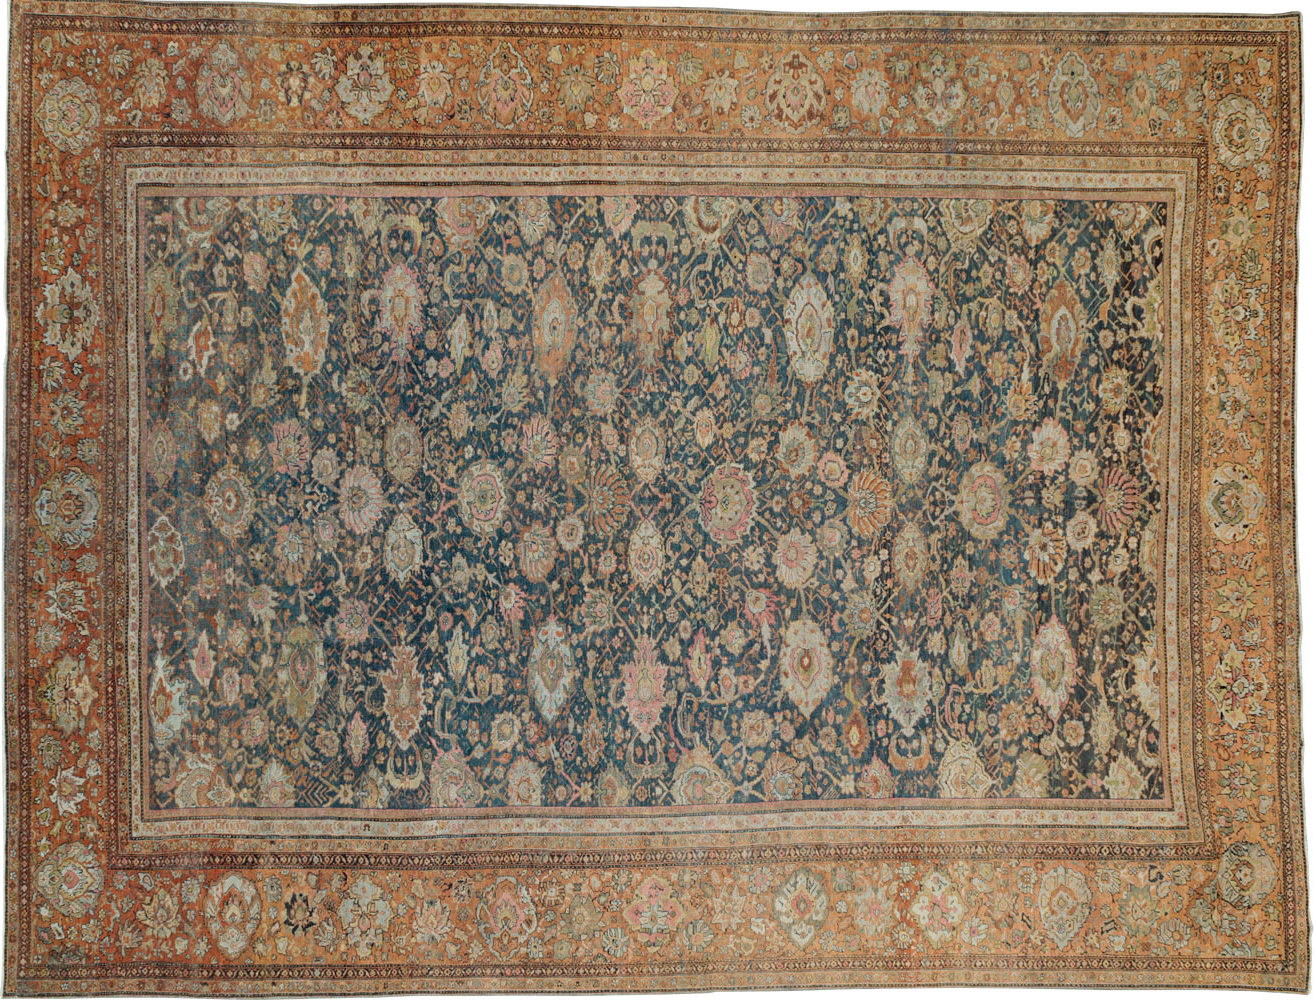 Antique sultan abad Carpet - # 55445